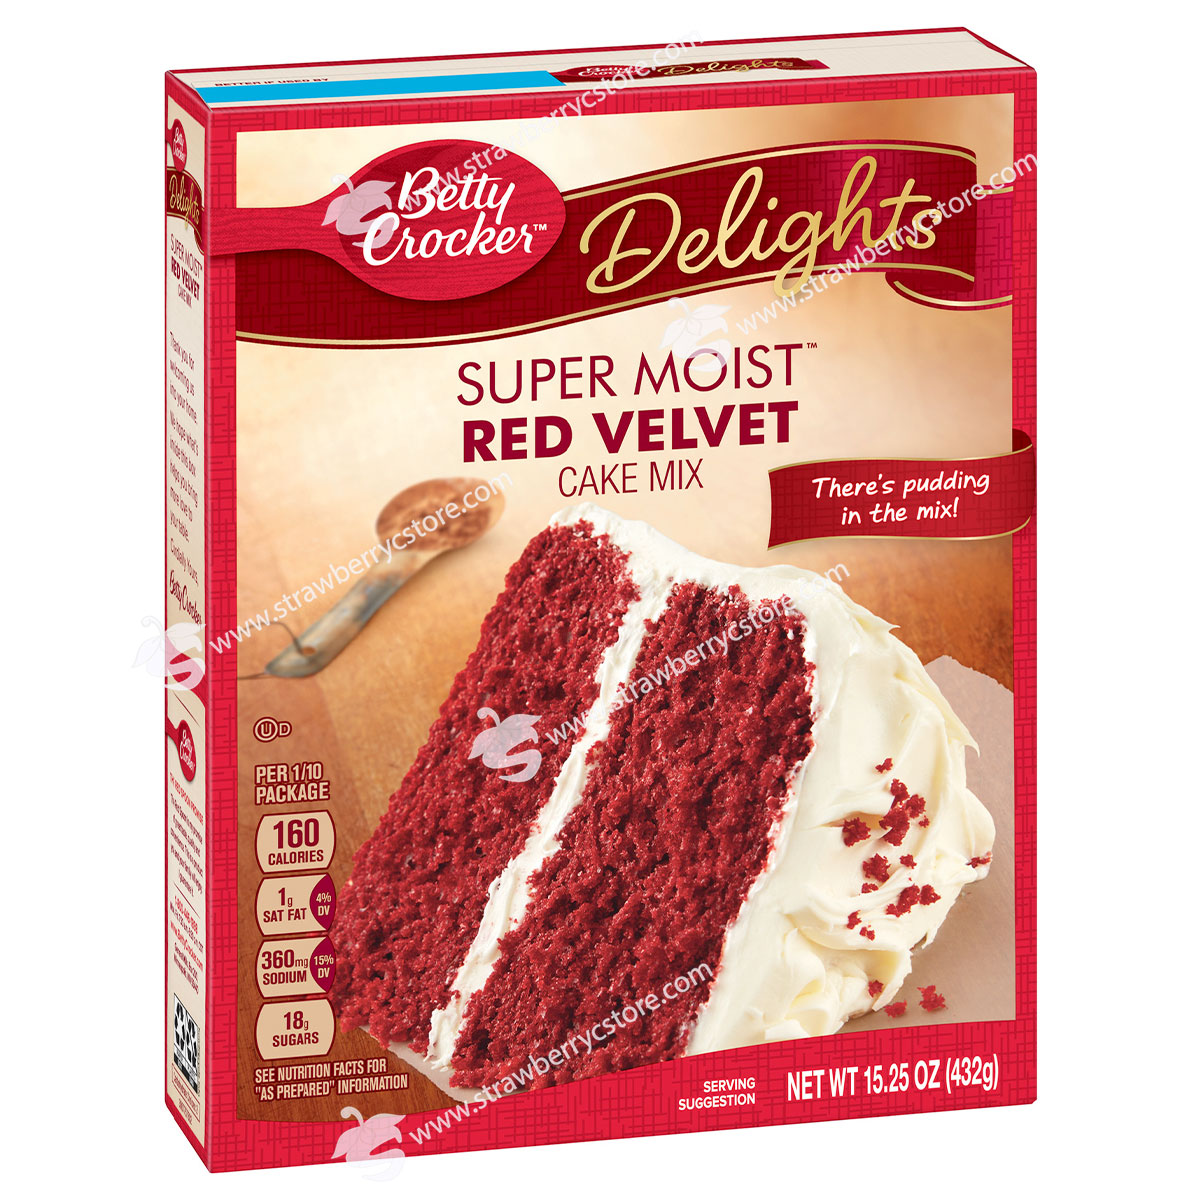 Bột làm bánh pha sẵn betty crocker super moist cake mix, hộp 432g 15.25 oz. - ảnh sản phẩm 3